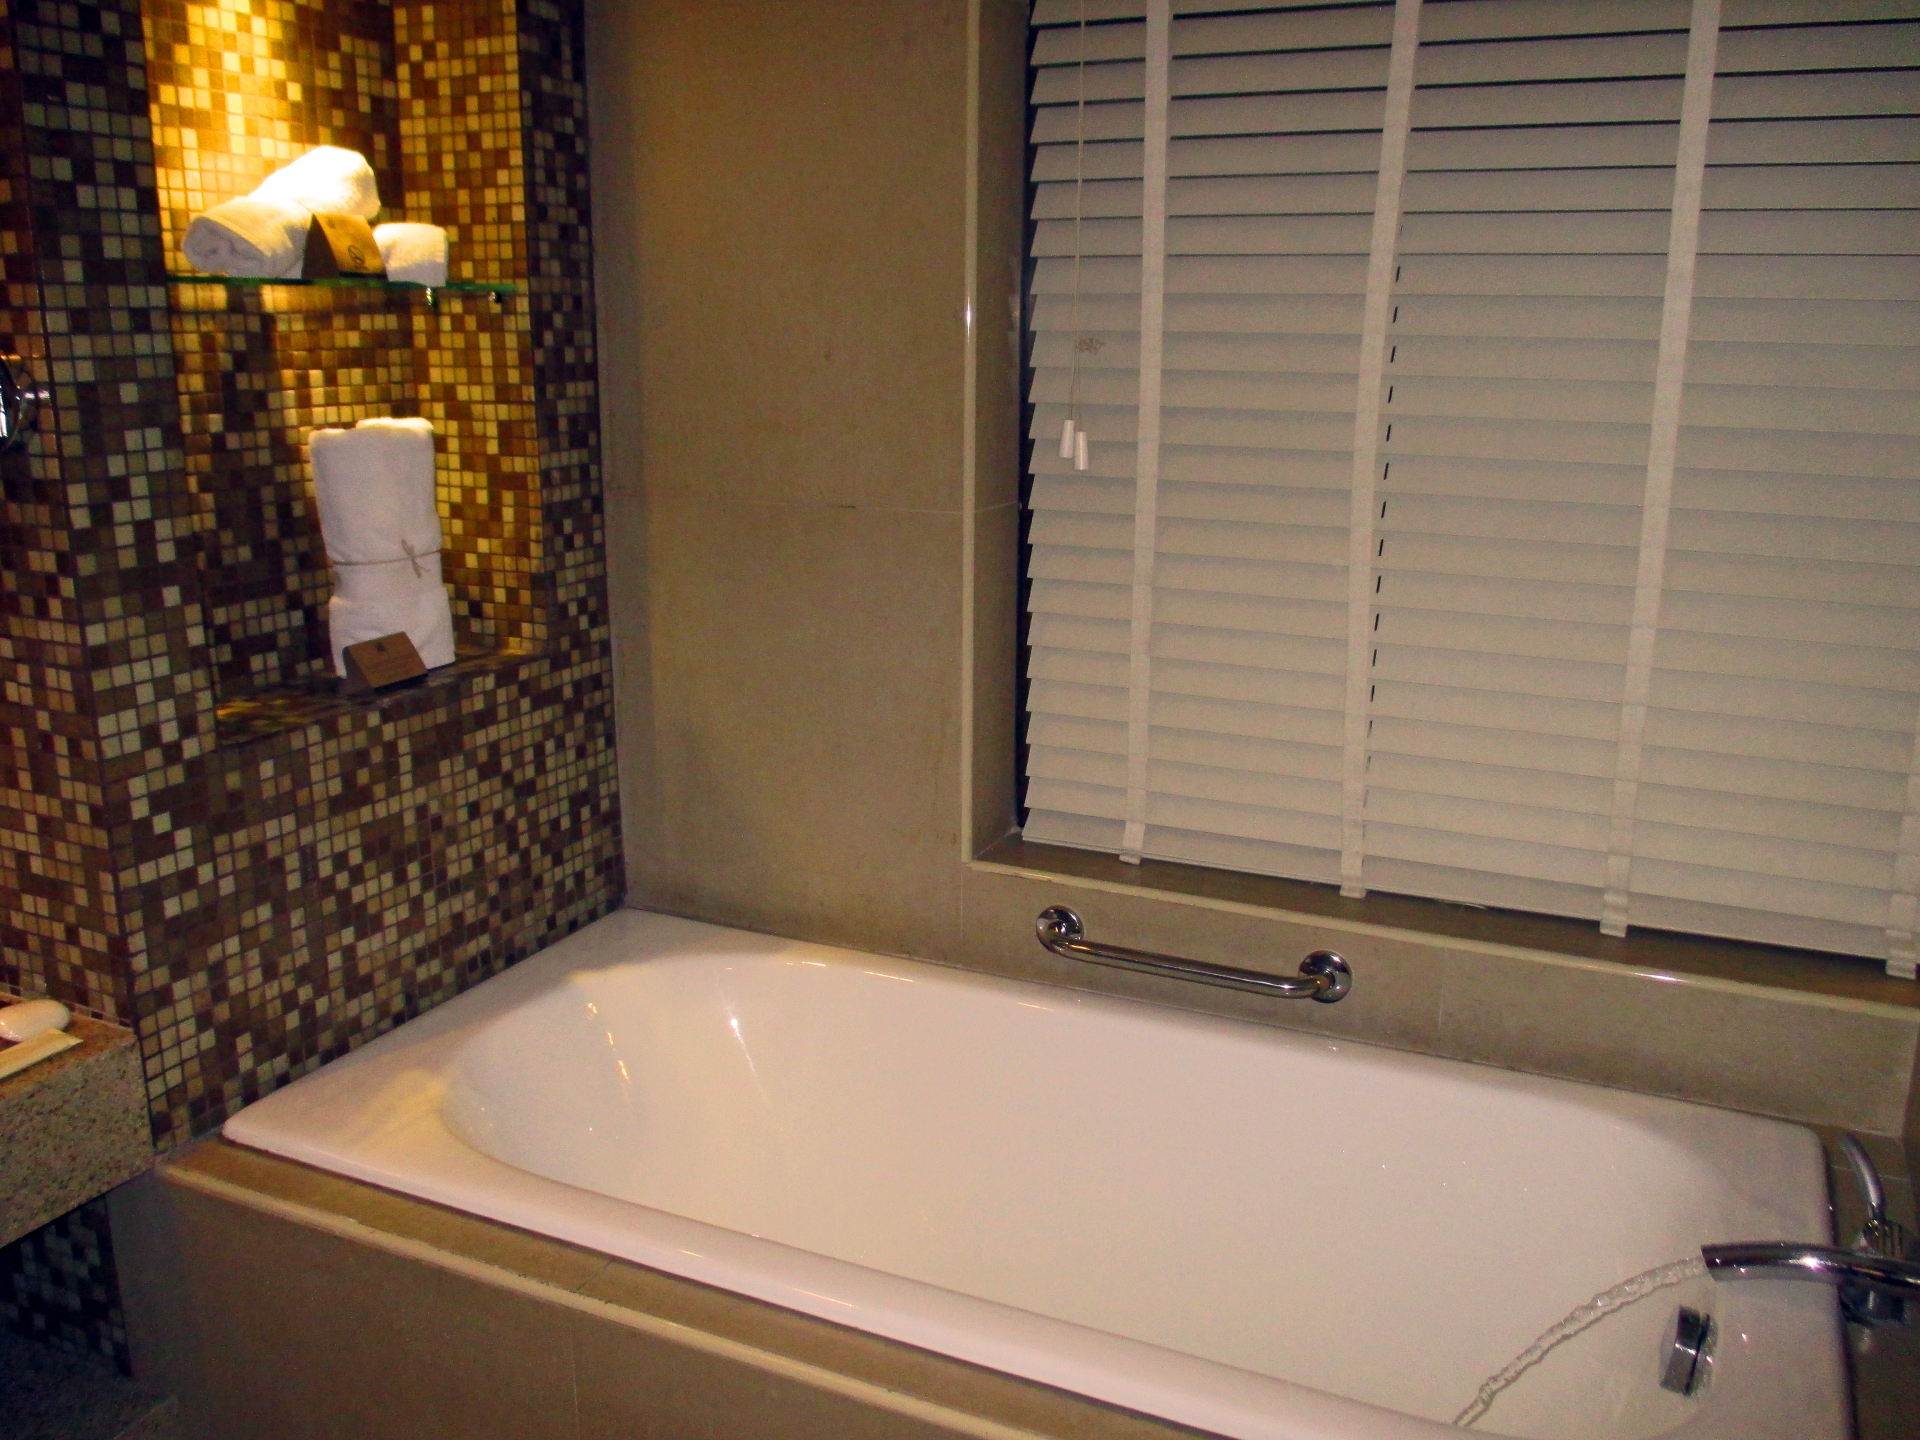 浴室のカビ取り方法と予防 天井やゴムパッキンには重曹や酢が効果的